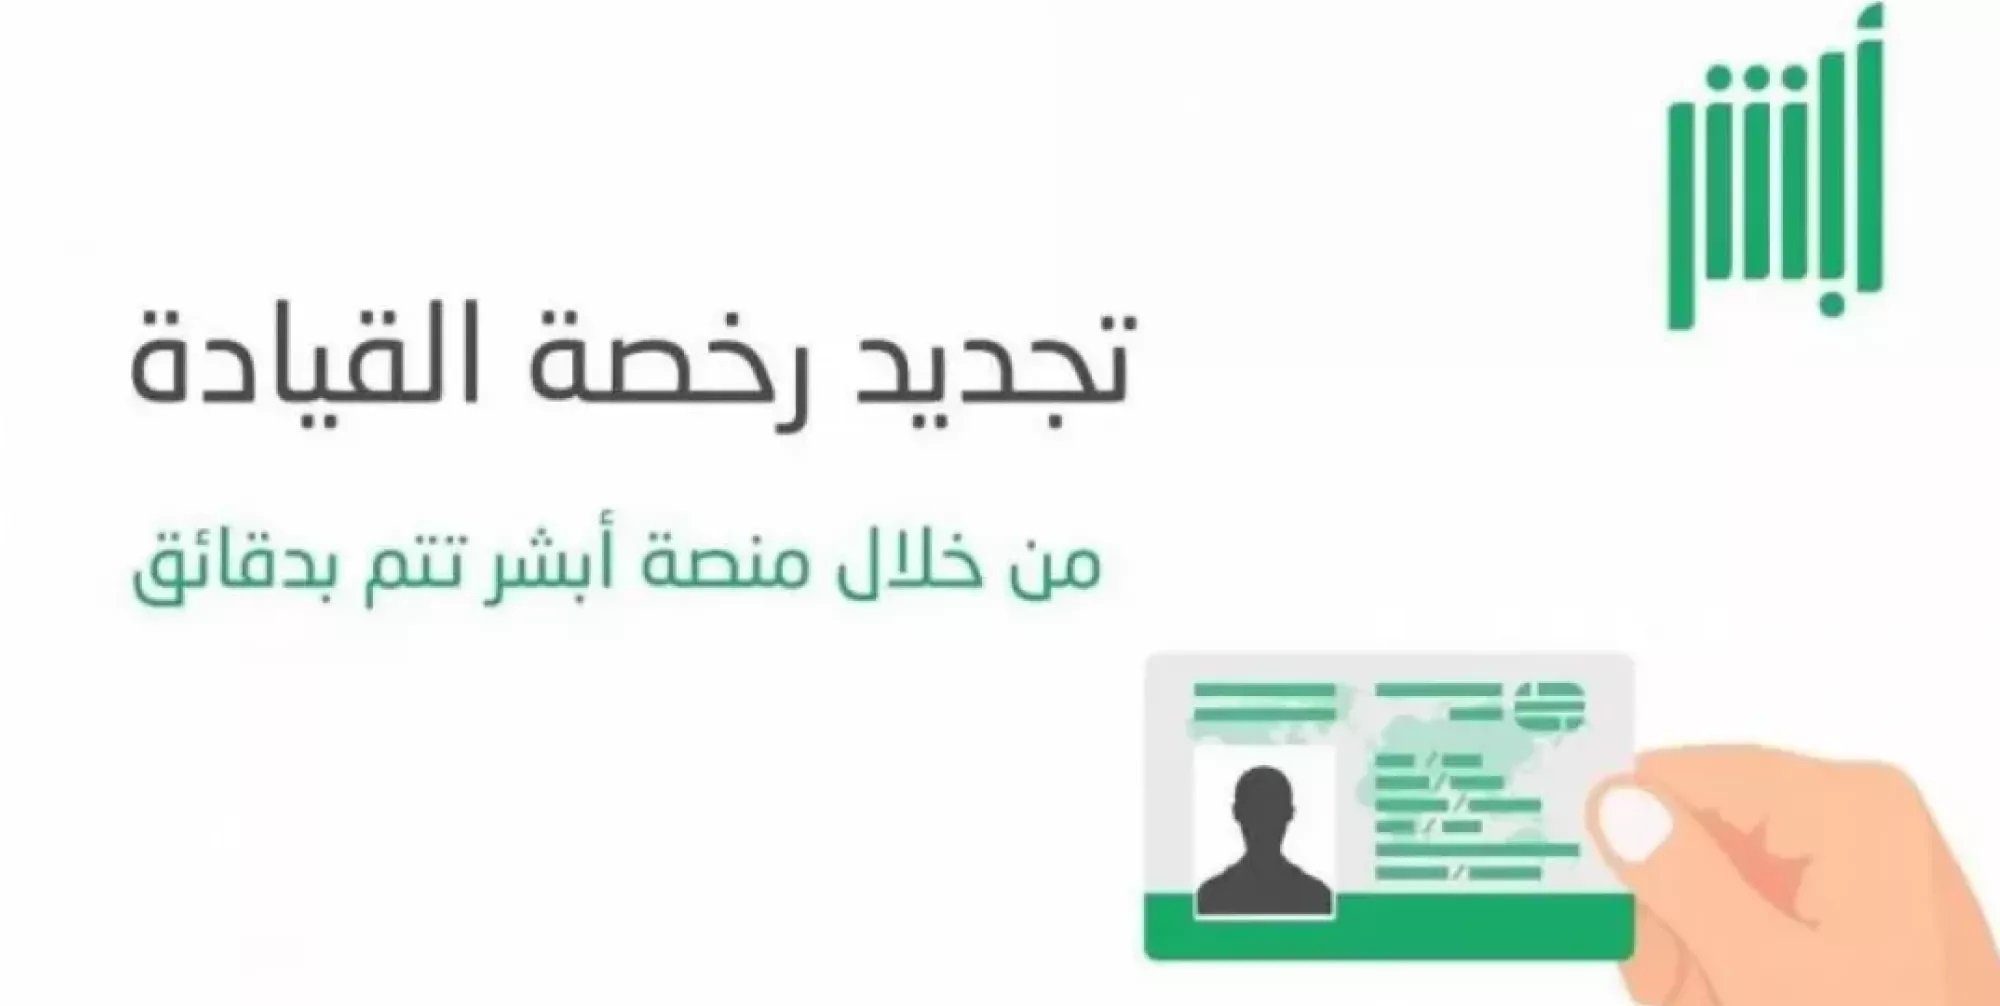 Amende pour expiration du permis de conduire, Al-Murabba Net